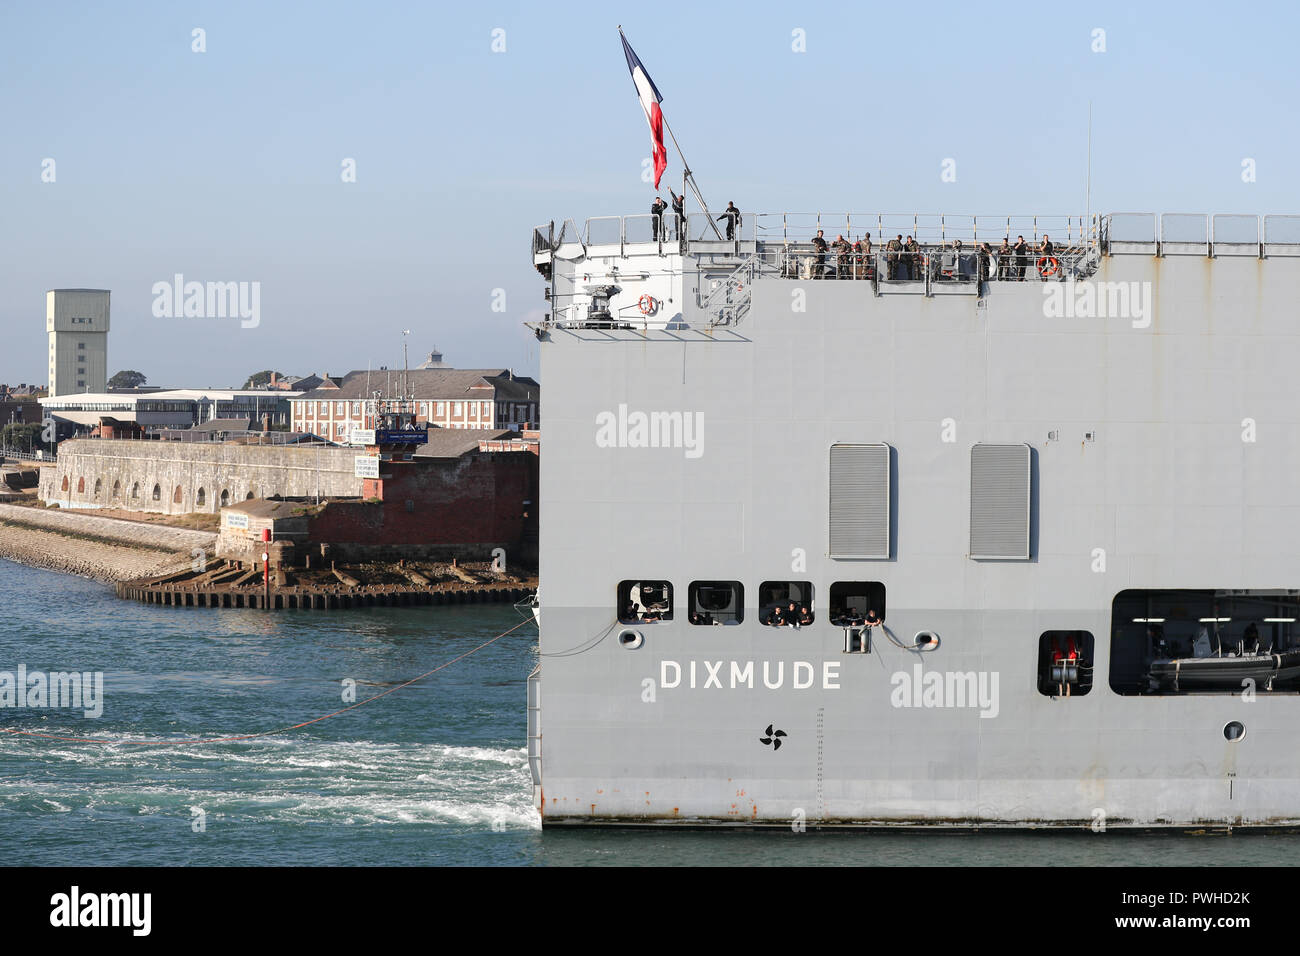 Die französische Trikolore ist Gehisst, wie die Französische Marine amphibisches Schiff und Hubschrauber Carrier, FS Dixmude, in Portsmouth Hafen ankommt. Stockfoto